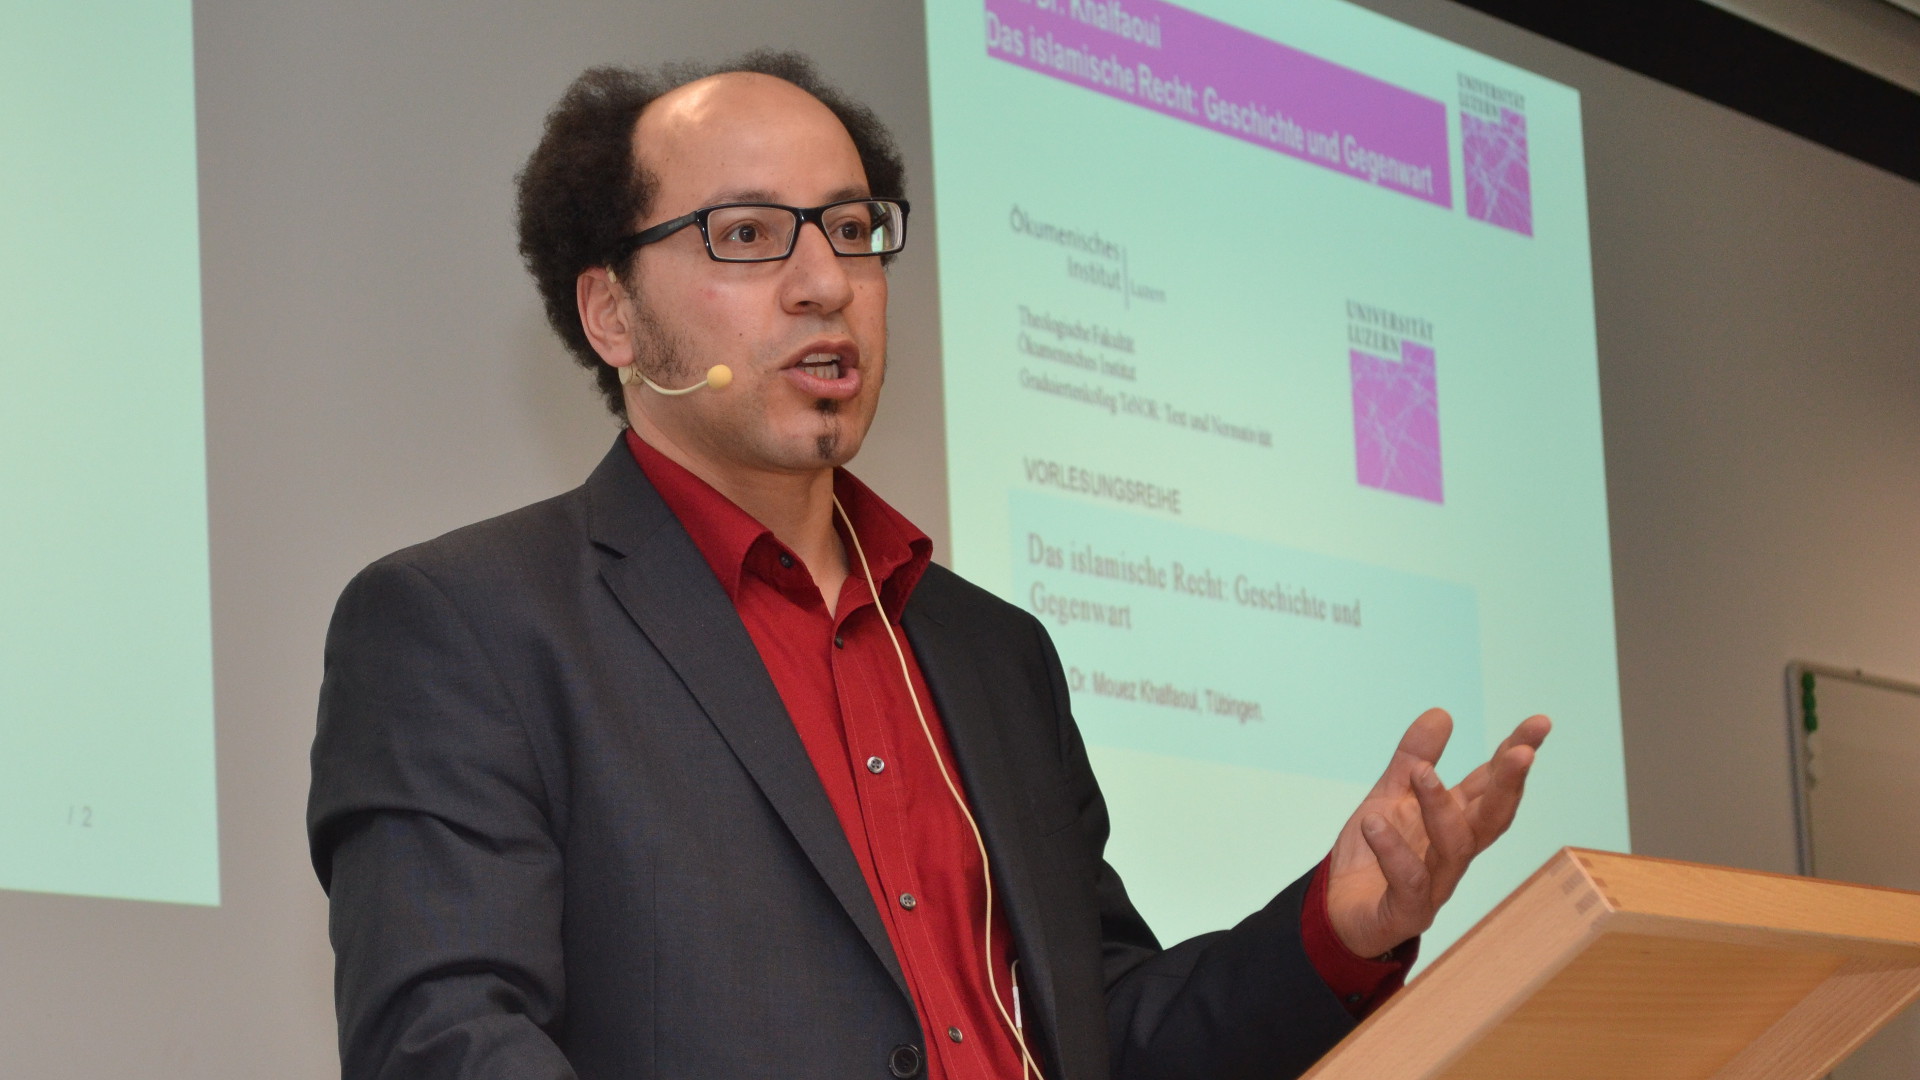 Mouez Khalfaoui, Professor für Islamisches Recht an der Universität Tübingen